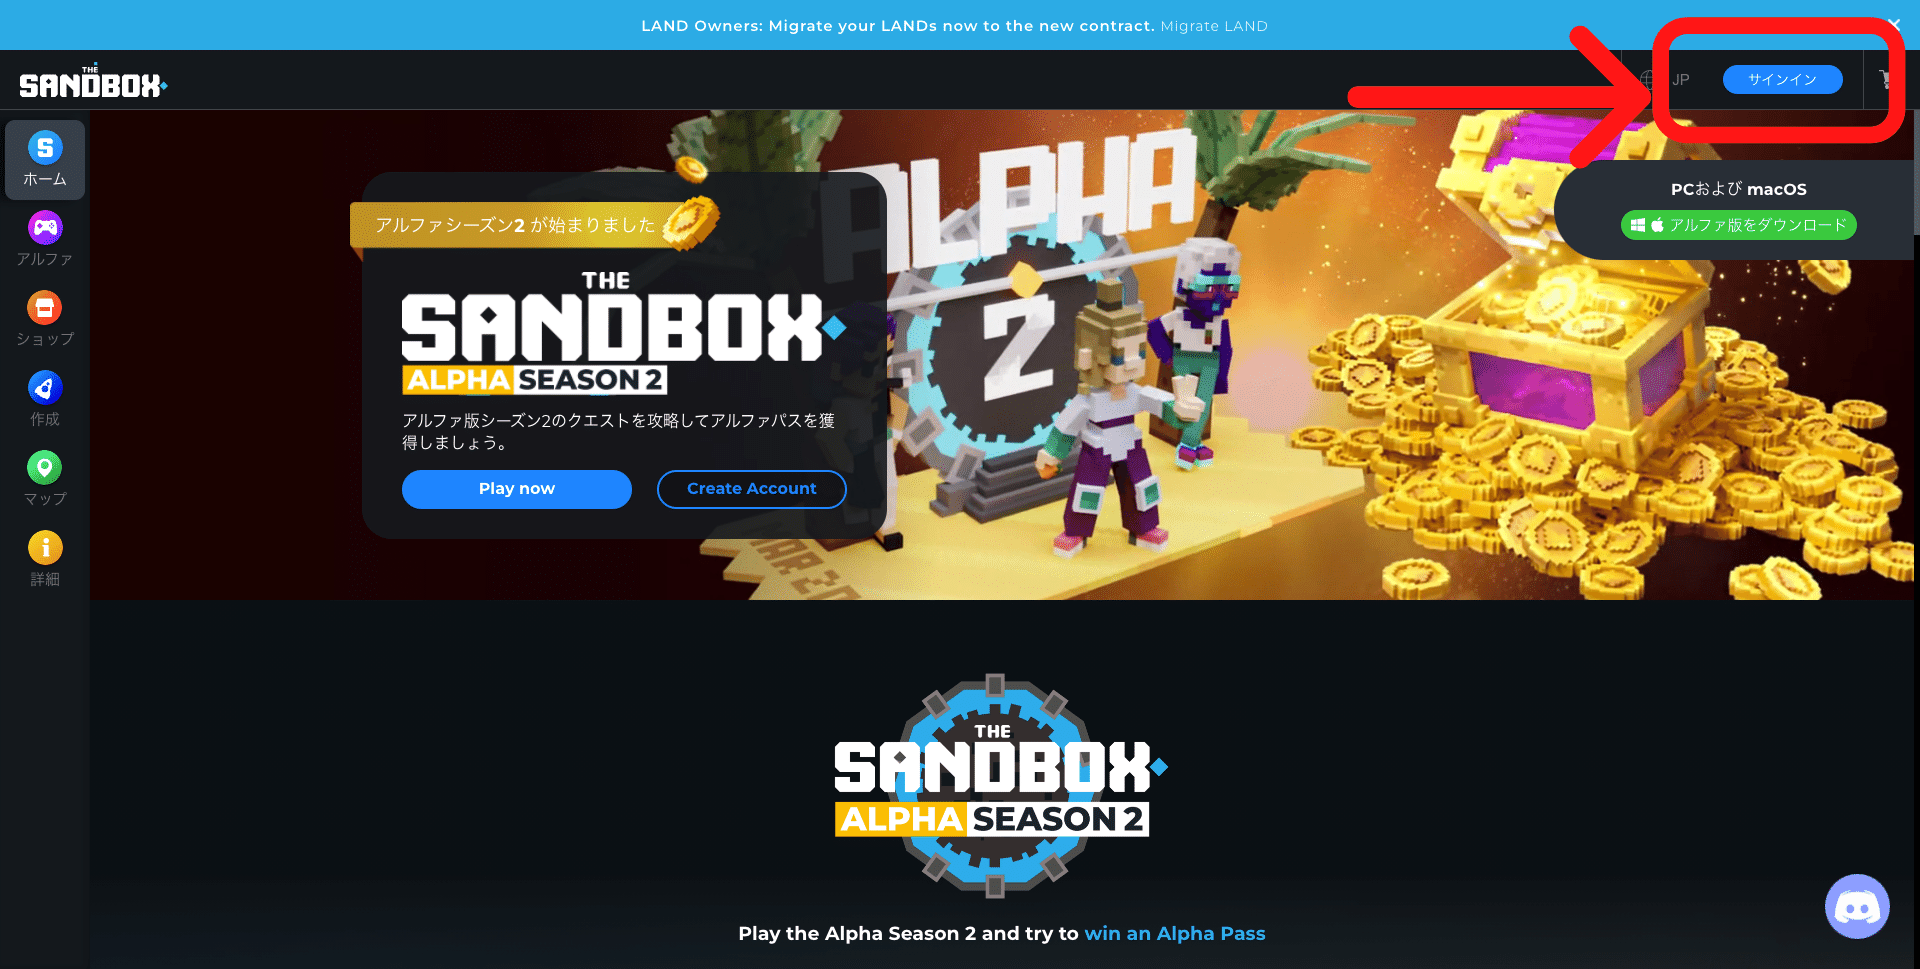 The Sandbox公式サイト